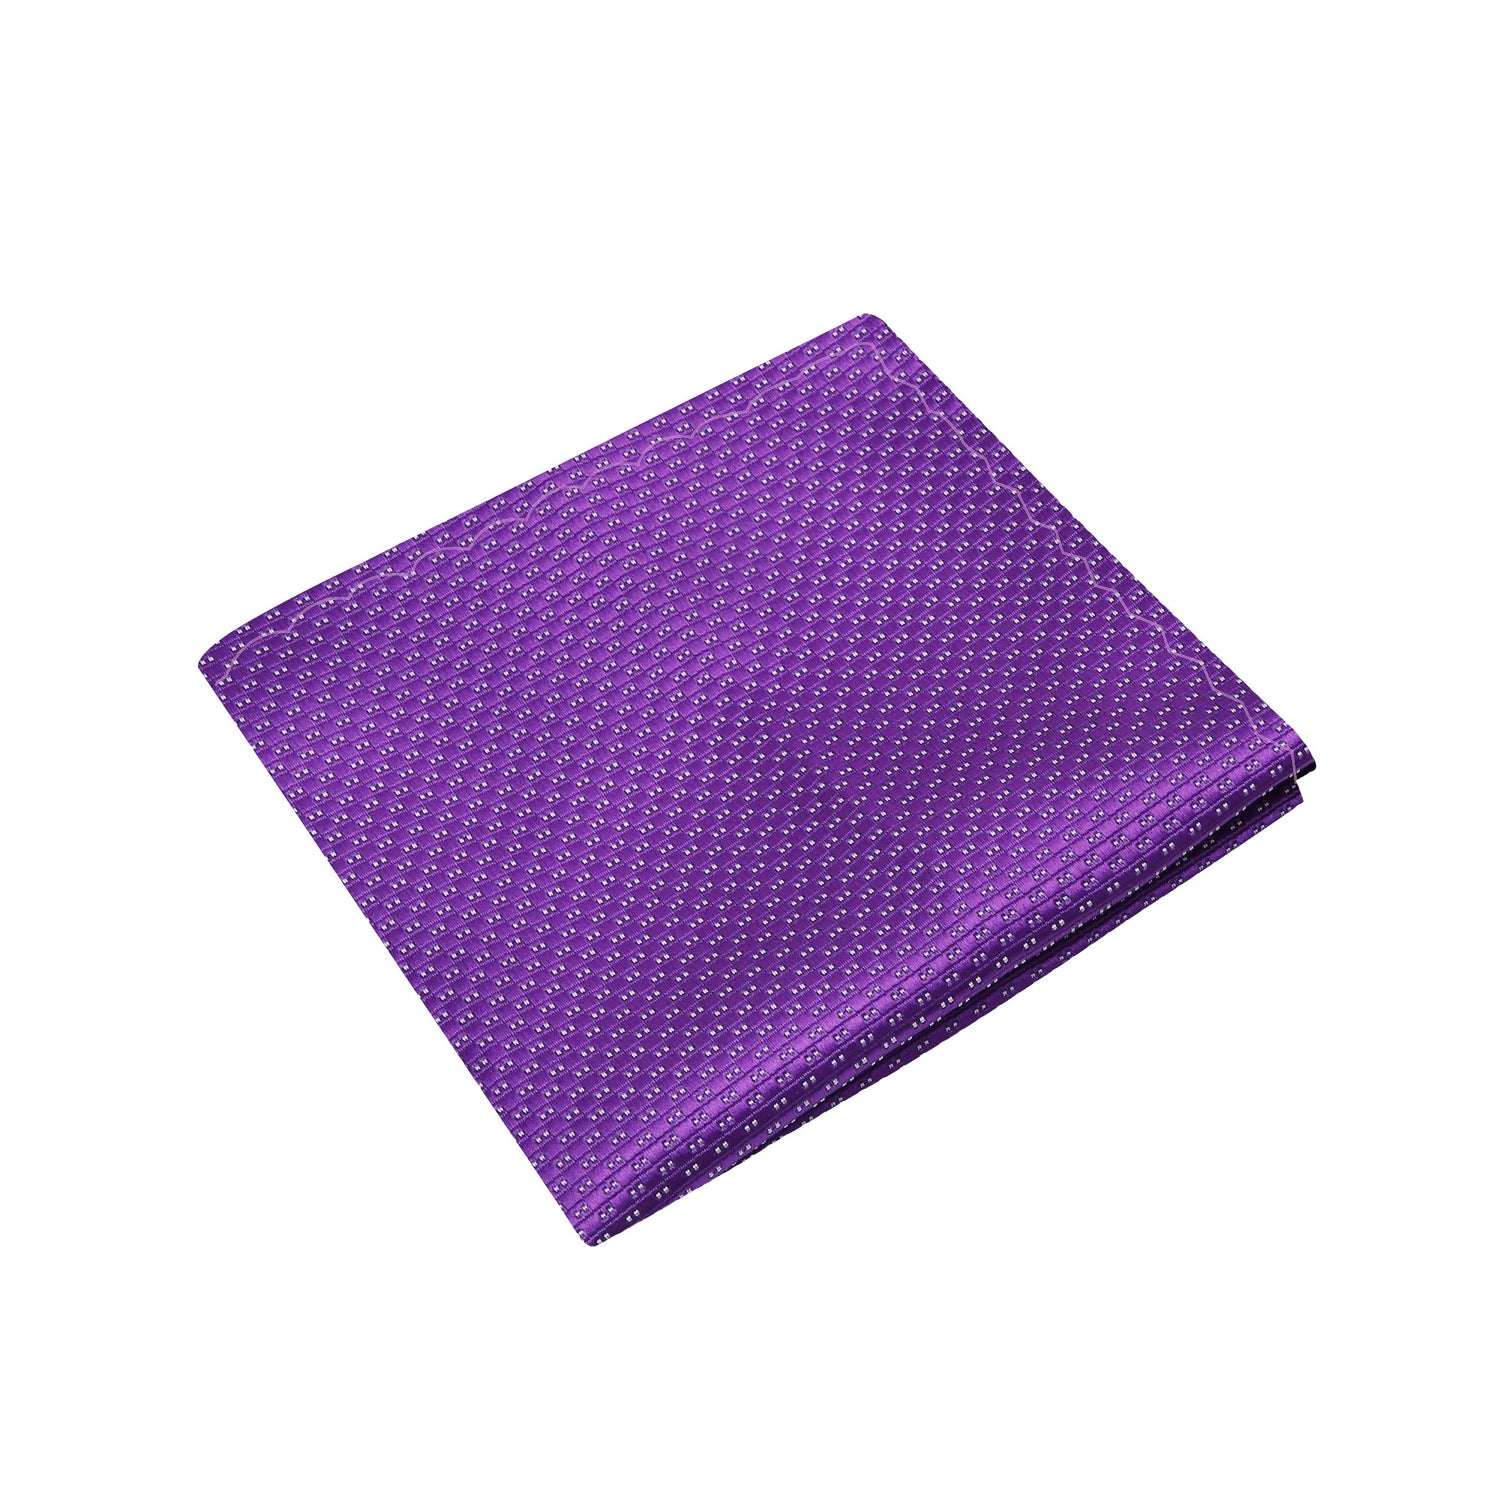 A Purple, White Polka Pattern Silk Pocket Square